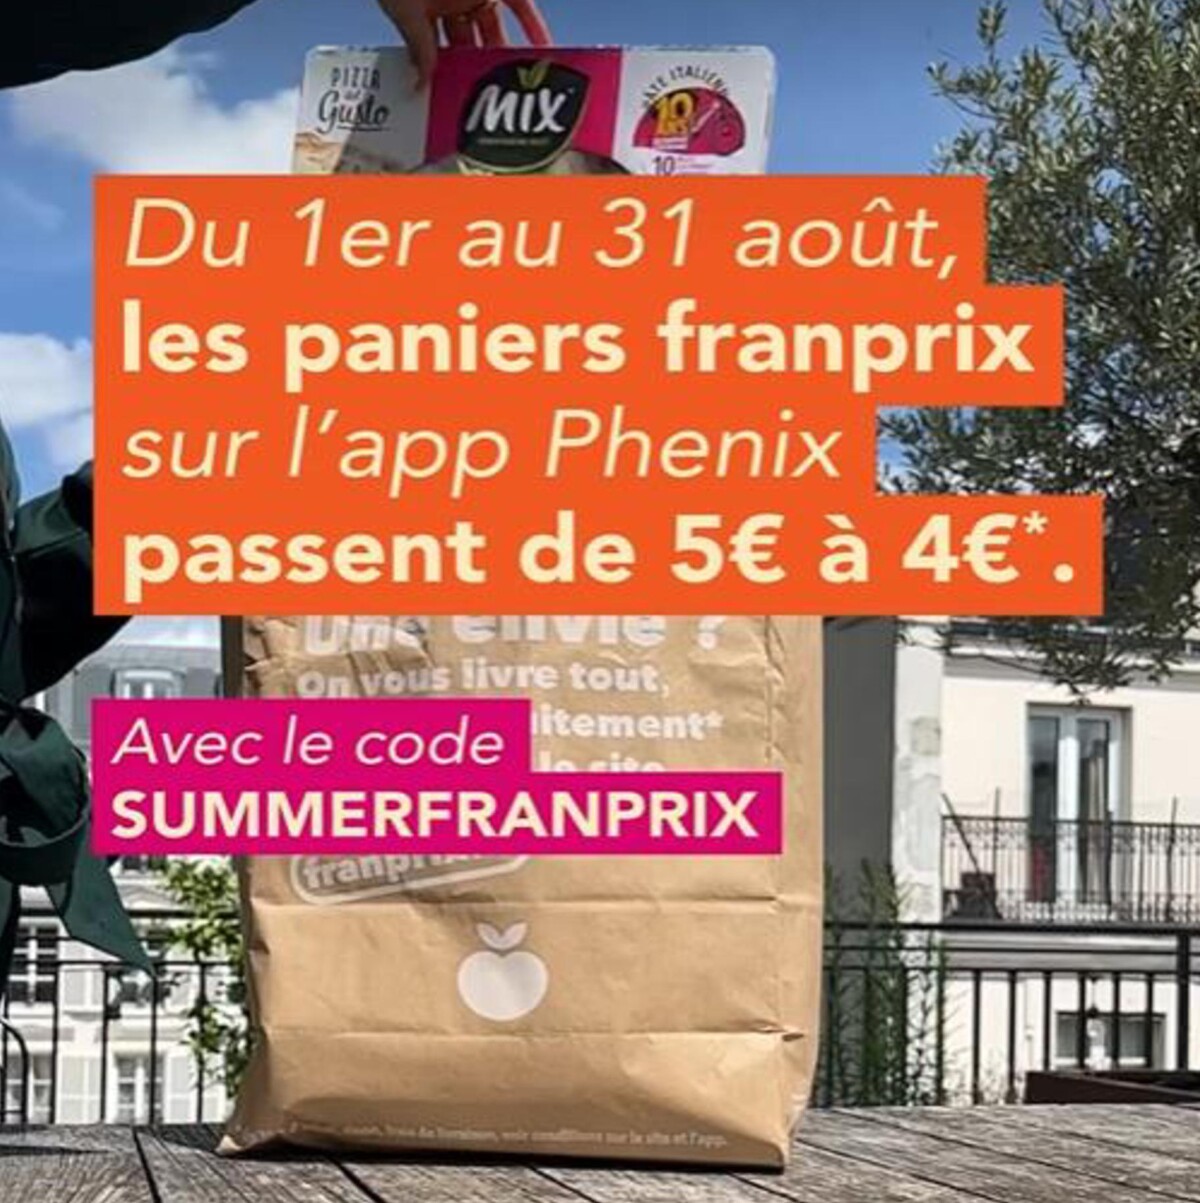 Catalogue Le panier franprix x Phenix passe de 5€ à 4€, page 00002